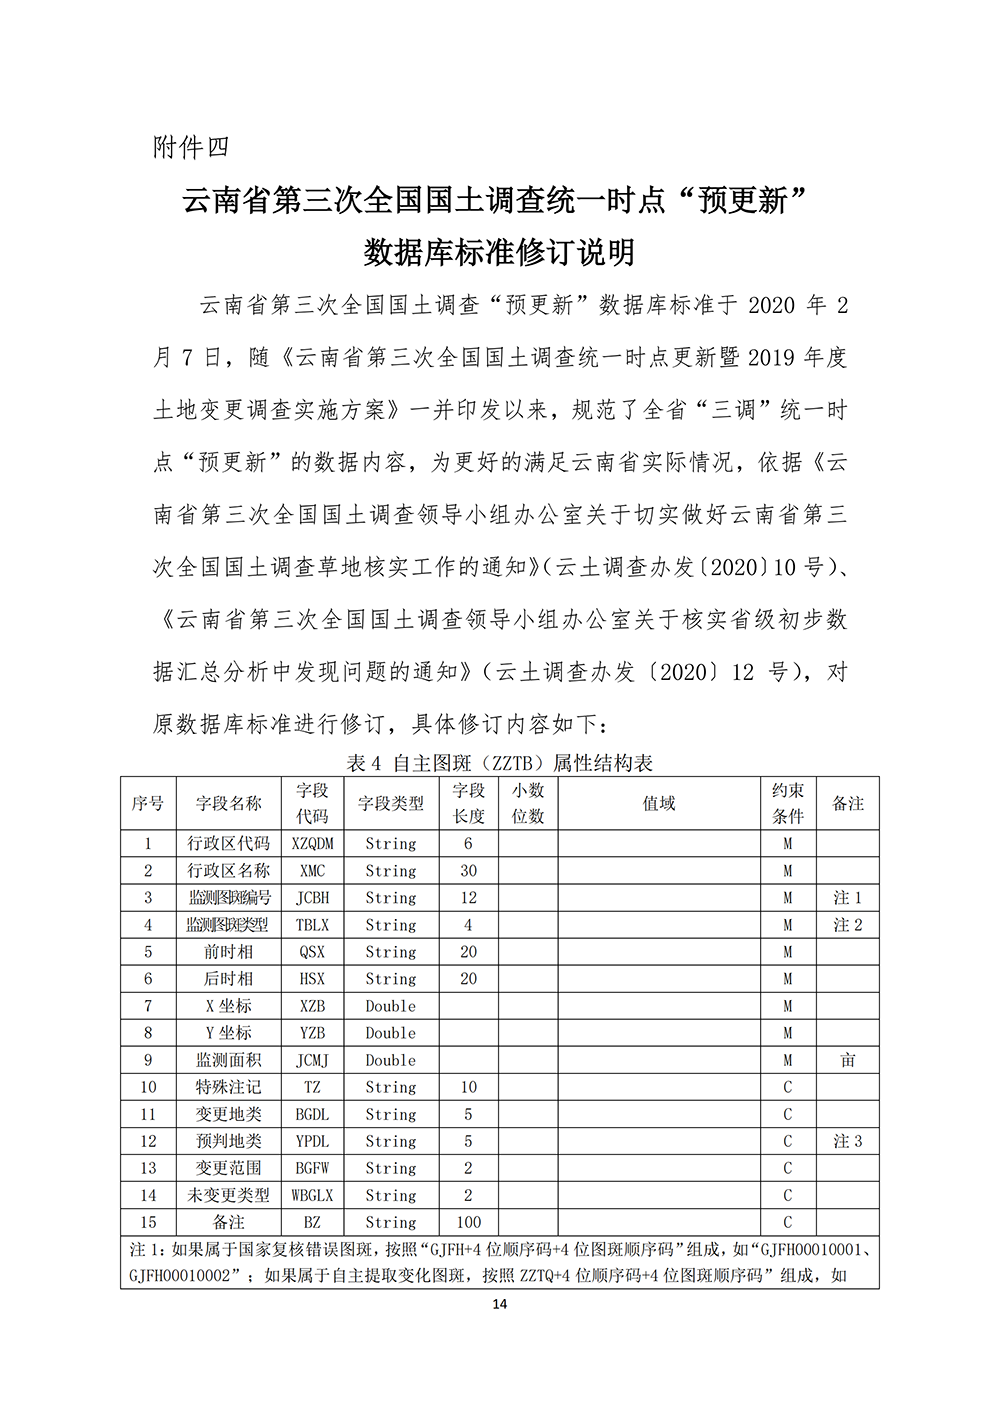 云南省第三次全国国土调查统一时点更新省级核查补充意见